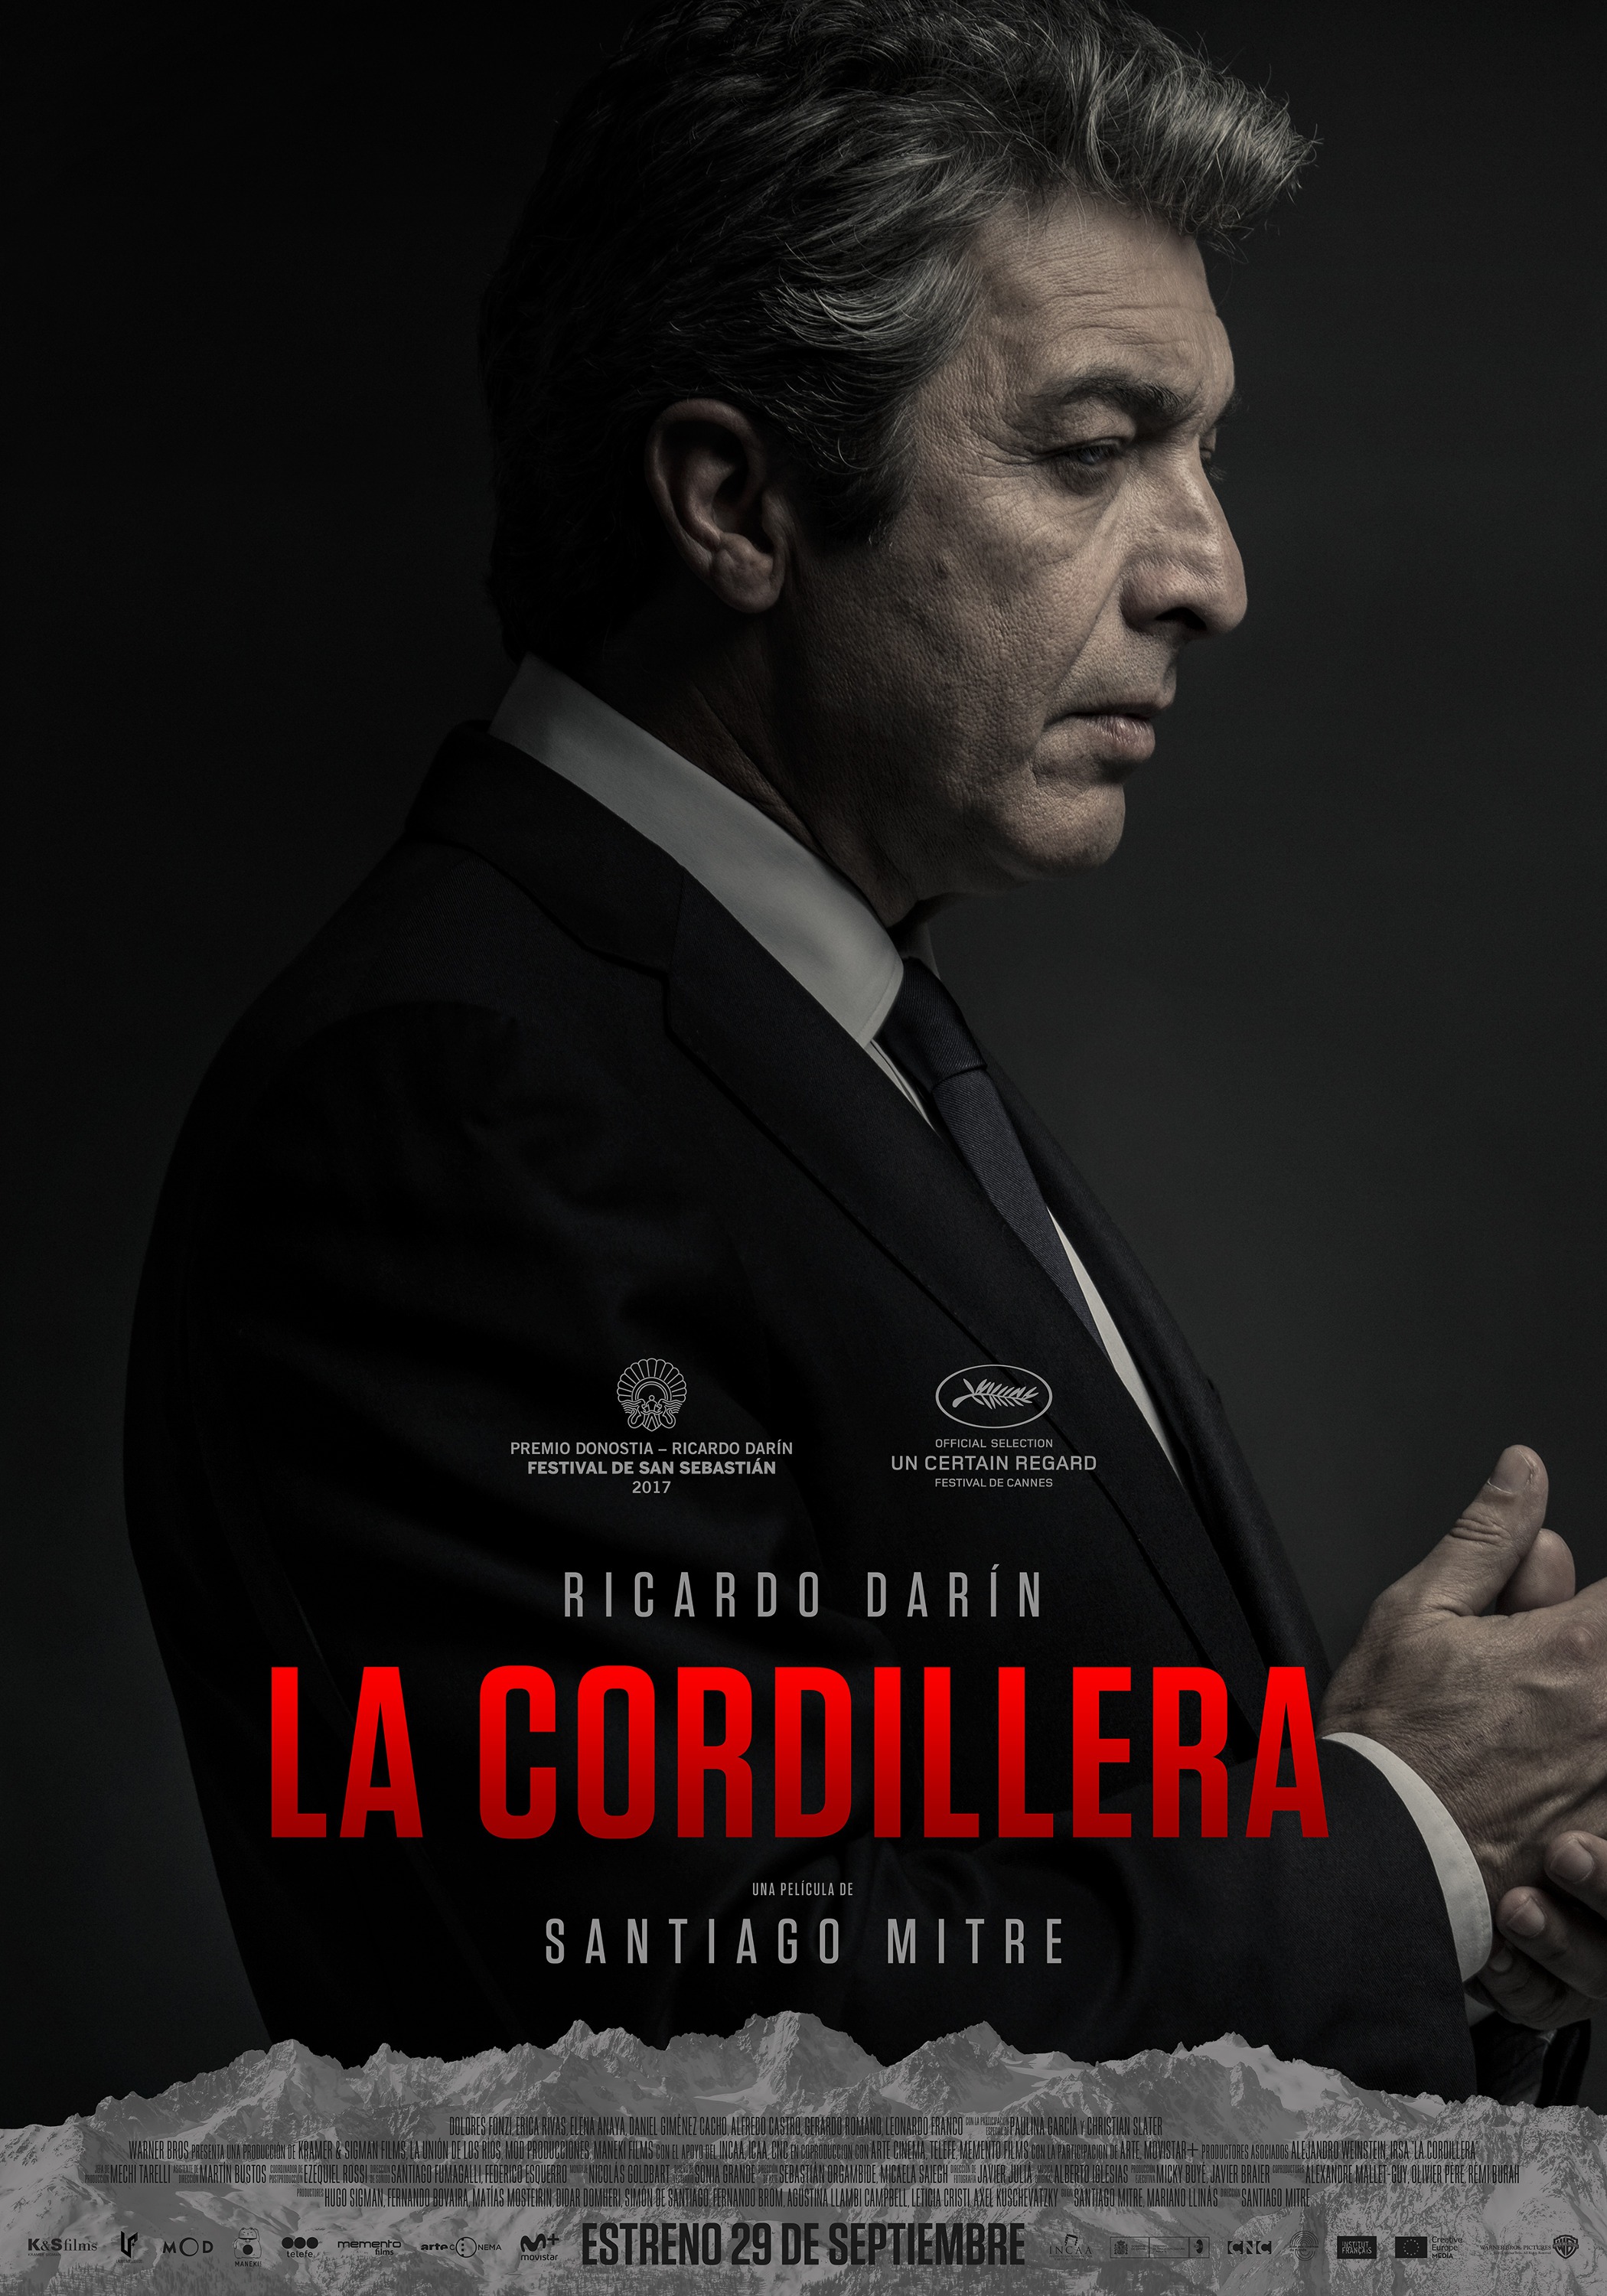 Mega Sized Movie Poster Image for La cordillera (#2 of 5)